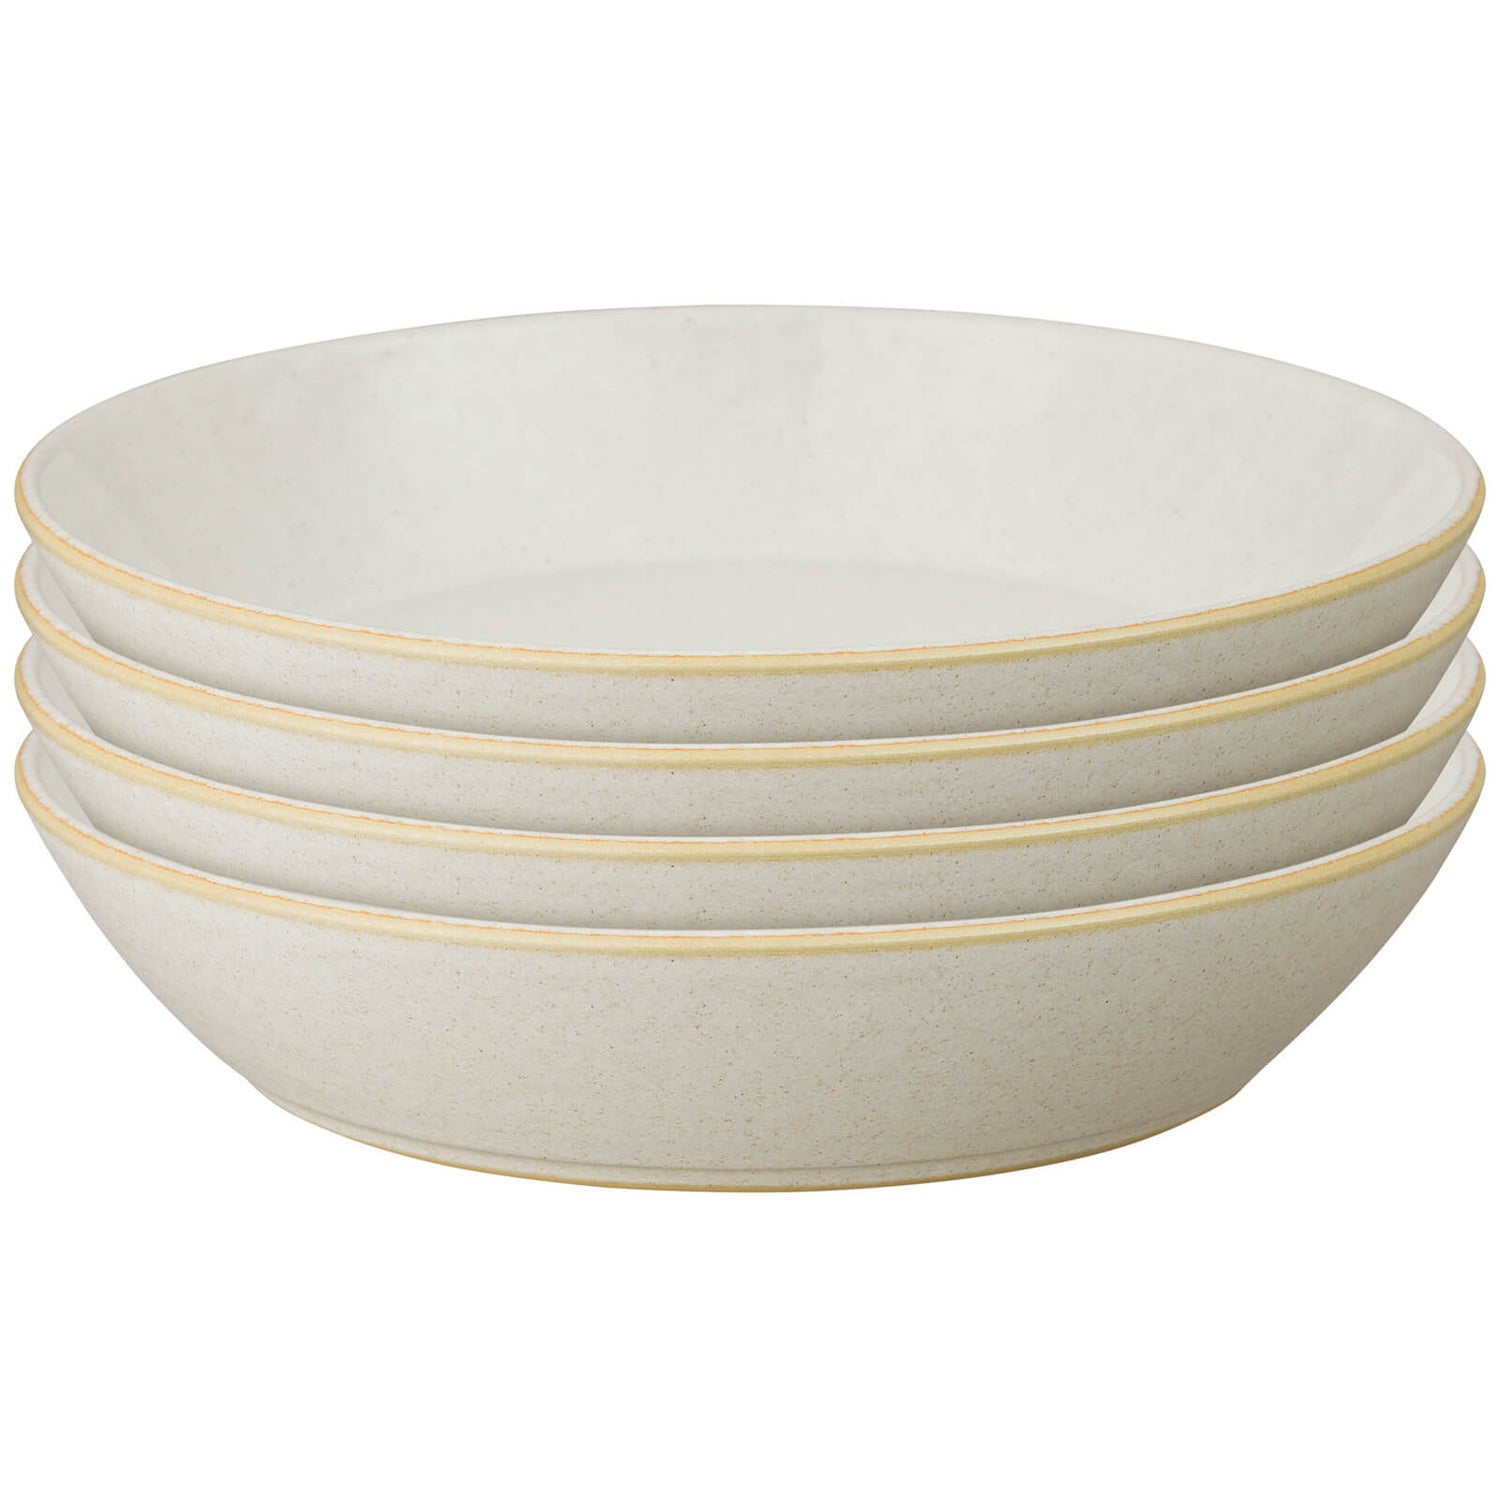 Denby Impression Cream Pasta Bowls (Set of 4) | TheHut.com